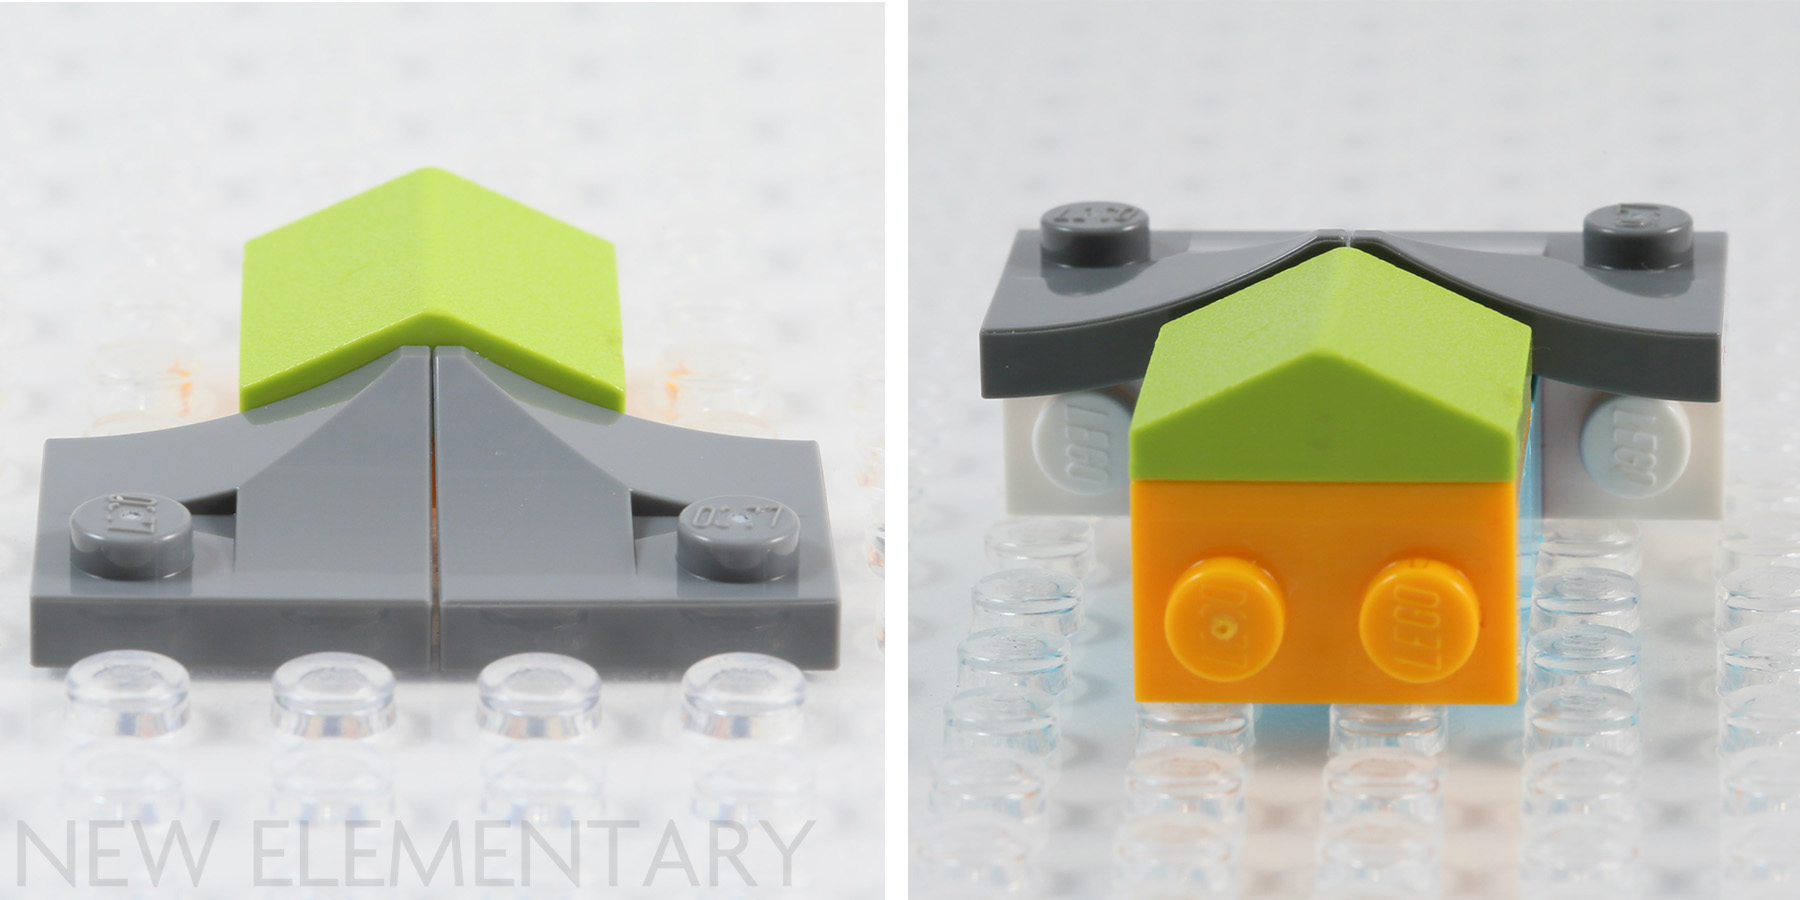 Plaque de base pour dalles LEGO® 3x4 avec 4 tenons noir - 88646 NOUVEA –  Stein-Experte